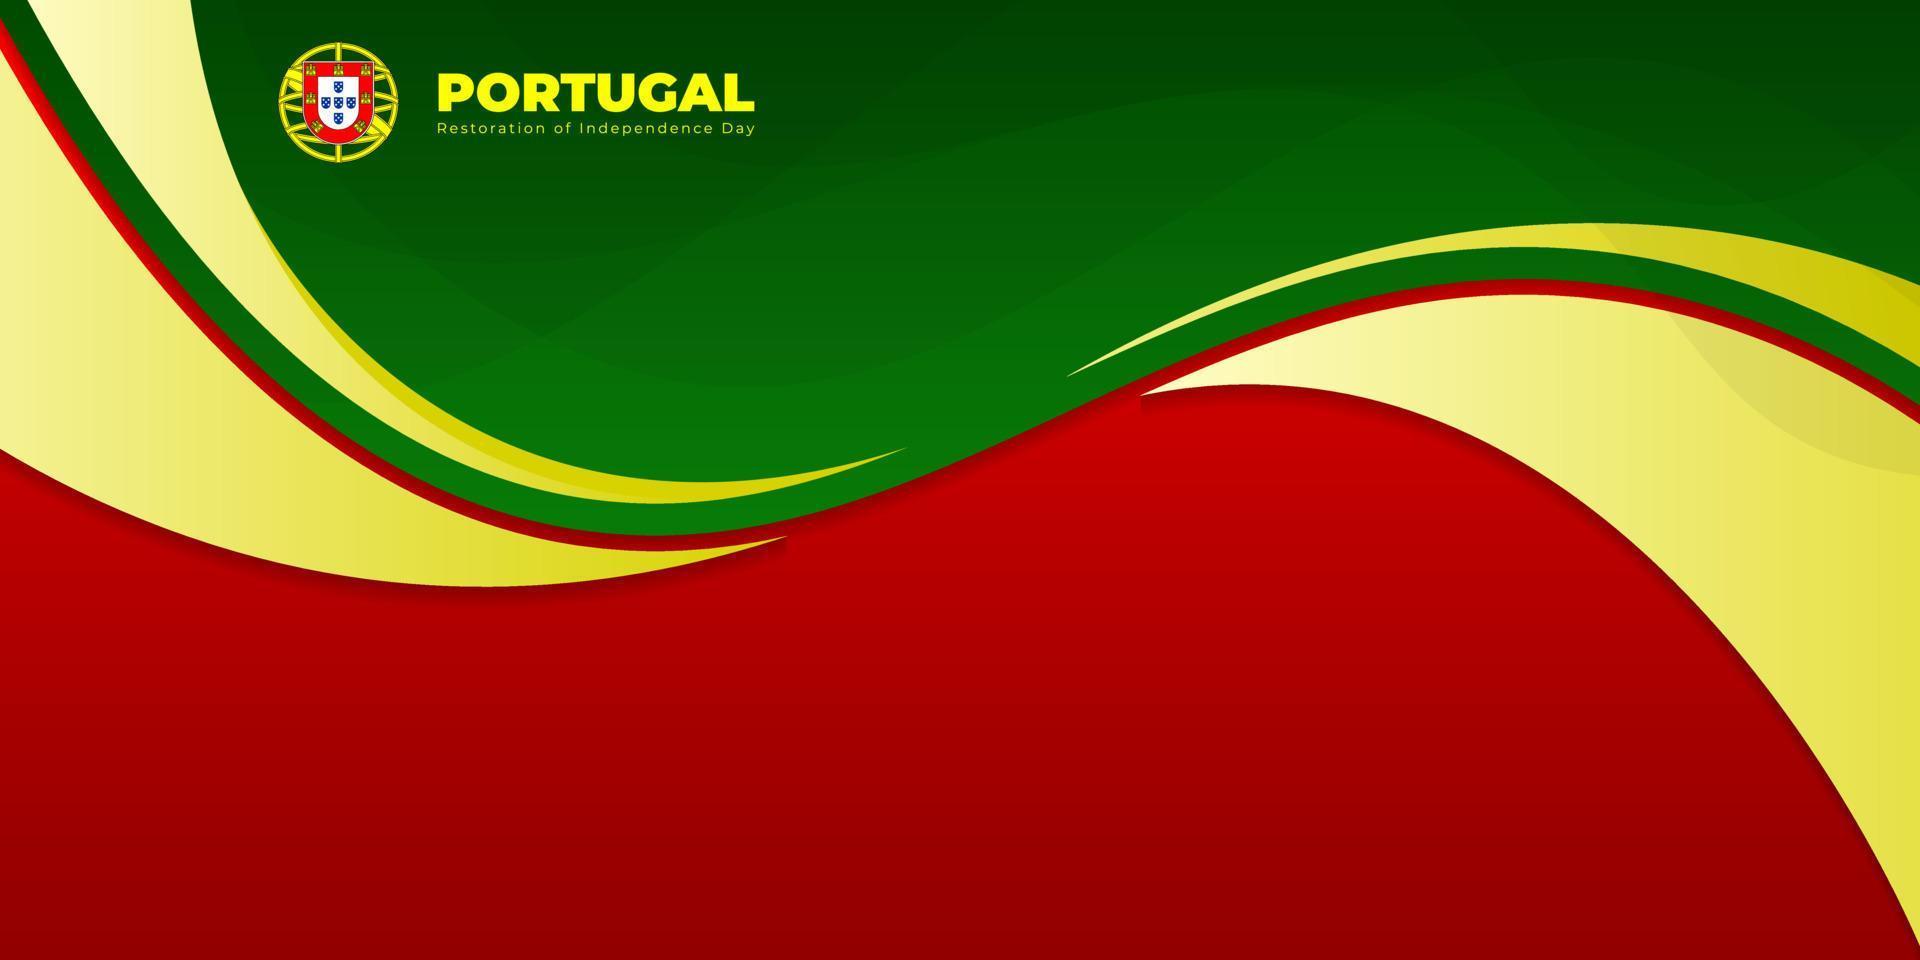 fond abstrait rouge et vert ondulé. conception de modèle de fête de l'indépendance de la restauration du portugal. vecteur